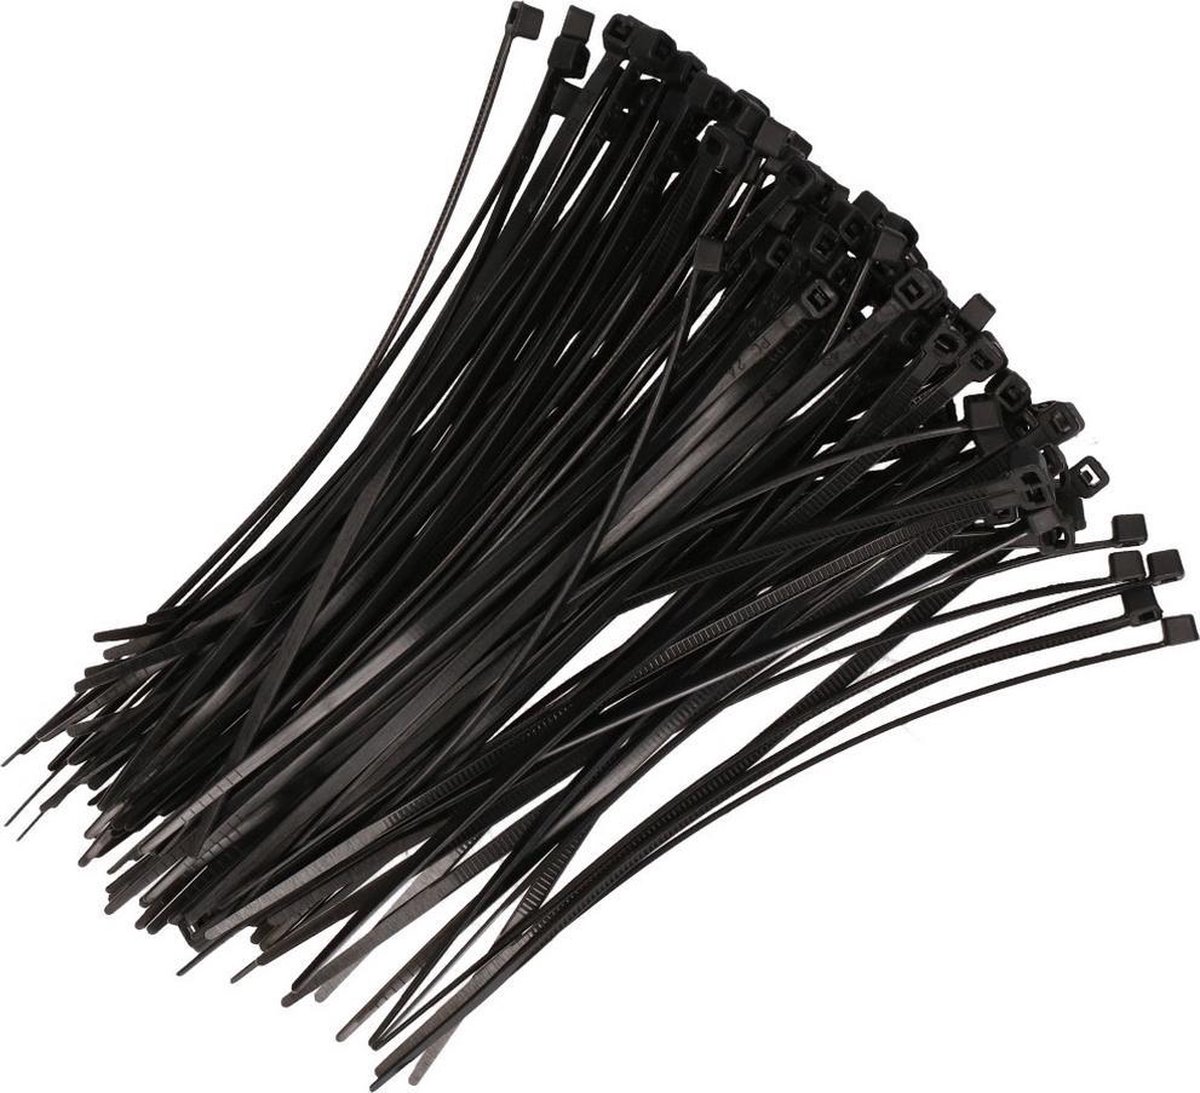 Kabelbinders zwart 200 x 2,5 mm 100 stuks - Fiets/tuin/hobby gereedschap